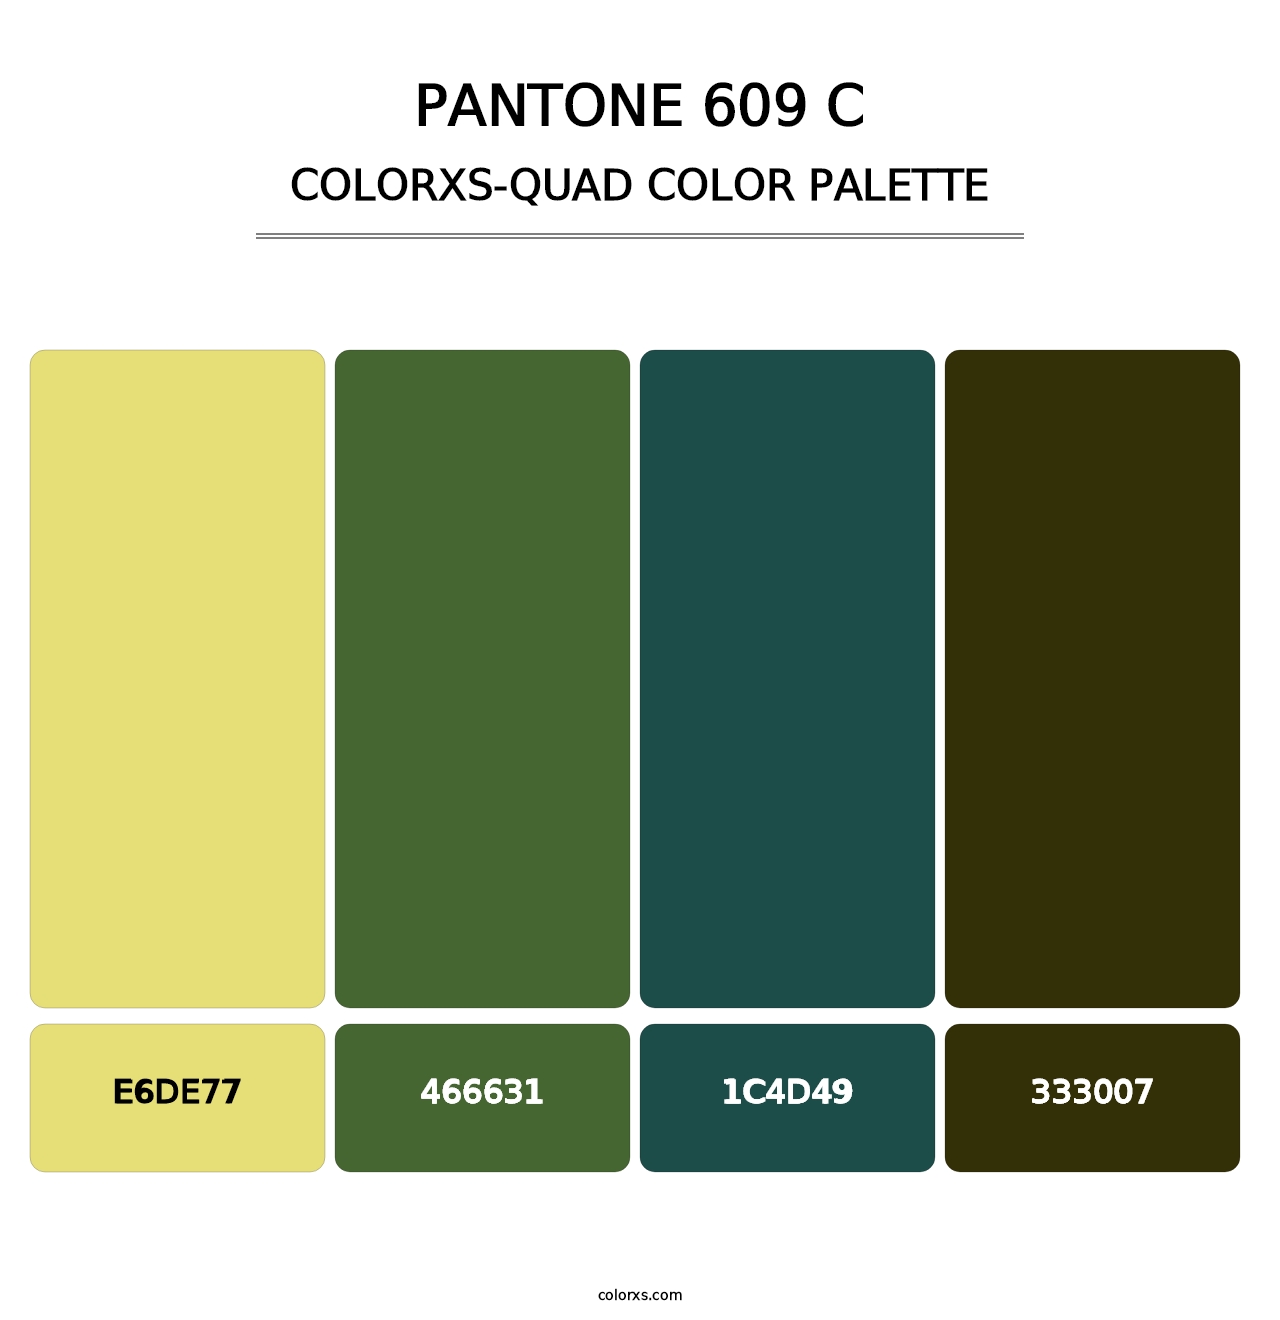 PANTONE 609 C - Colorxs Quad Palette